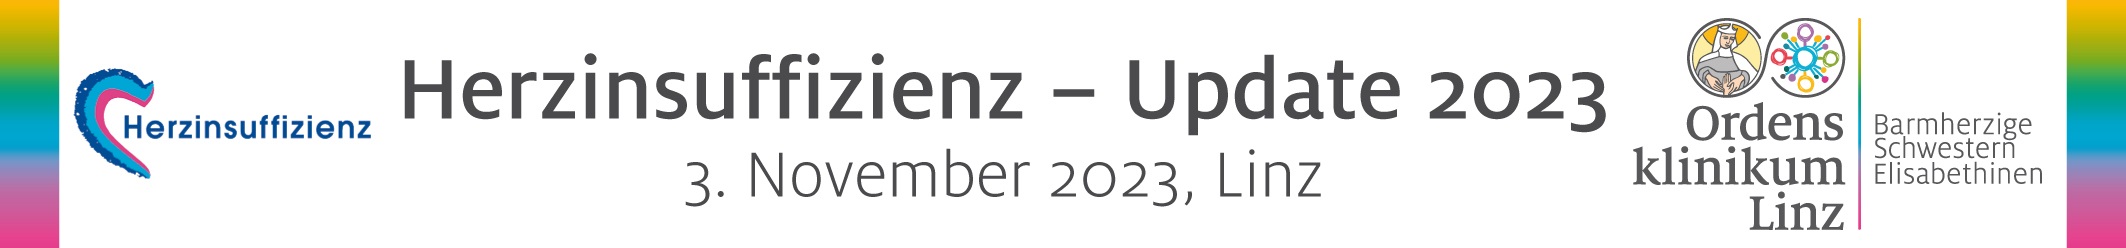 Herzinsuffizienz – Update 2023